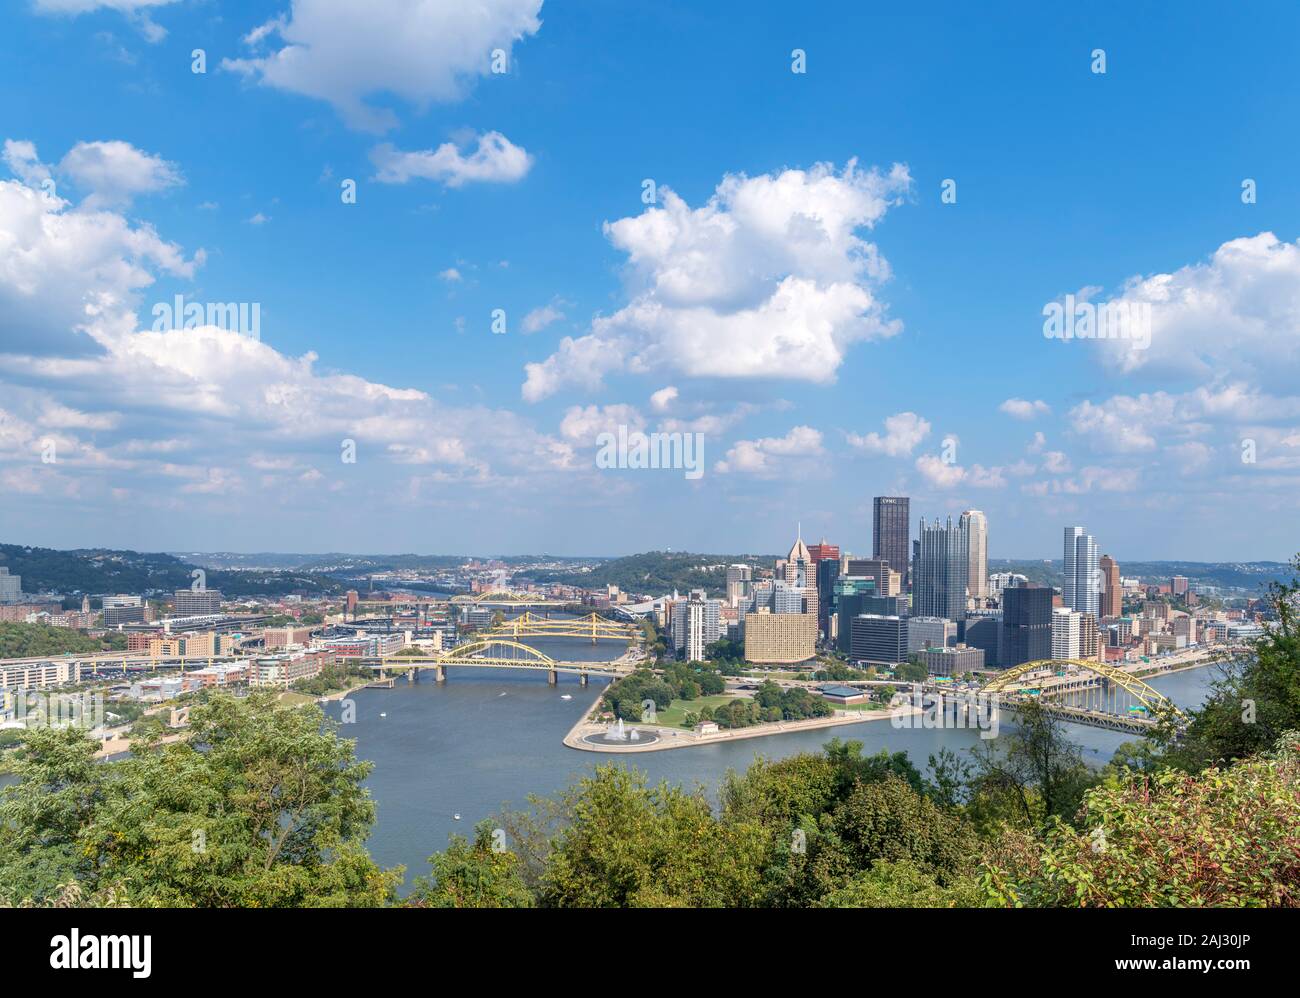 Vue aérienne du centre-ville à partir de points de vue parc sur l'avenue Grandview, Pittsburgh, Pennsylvanie, USA Banque D'Images